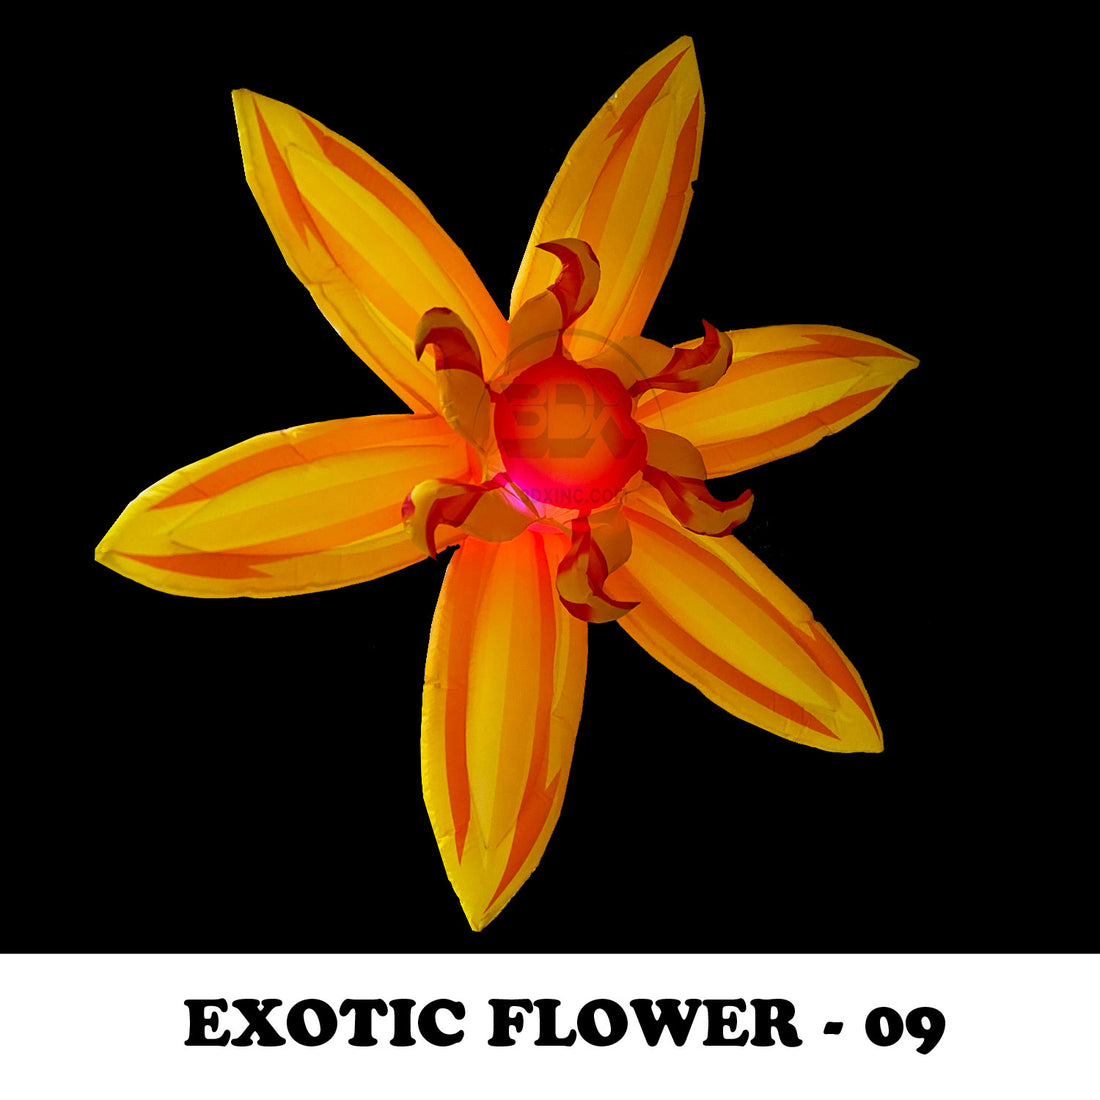 EXOTIC FLOWER - 09